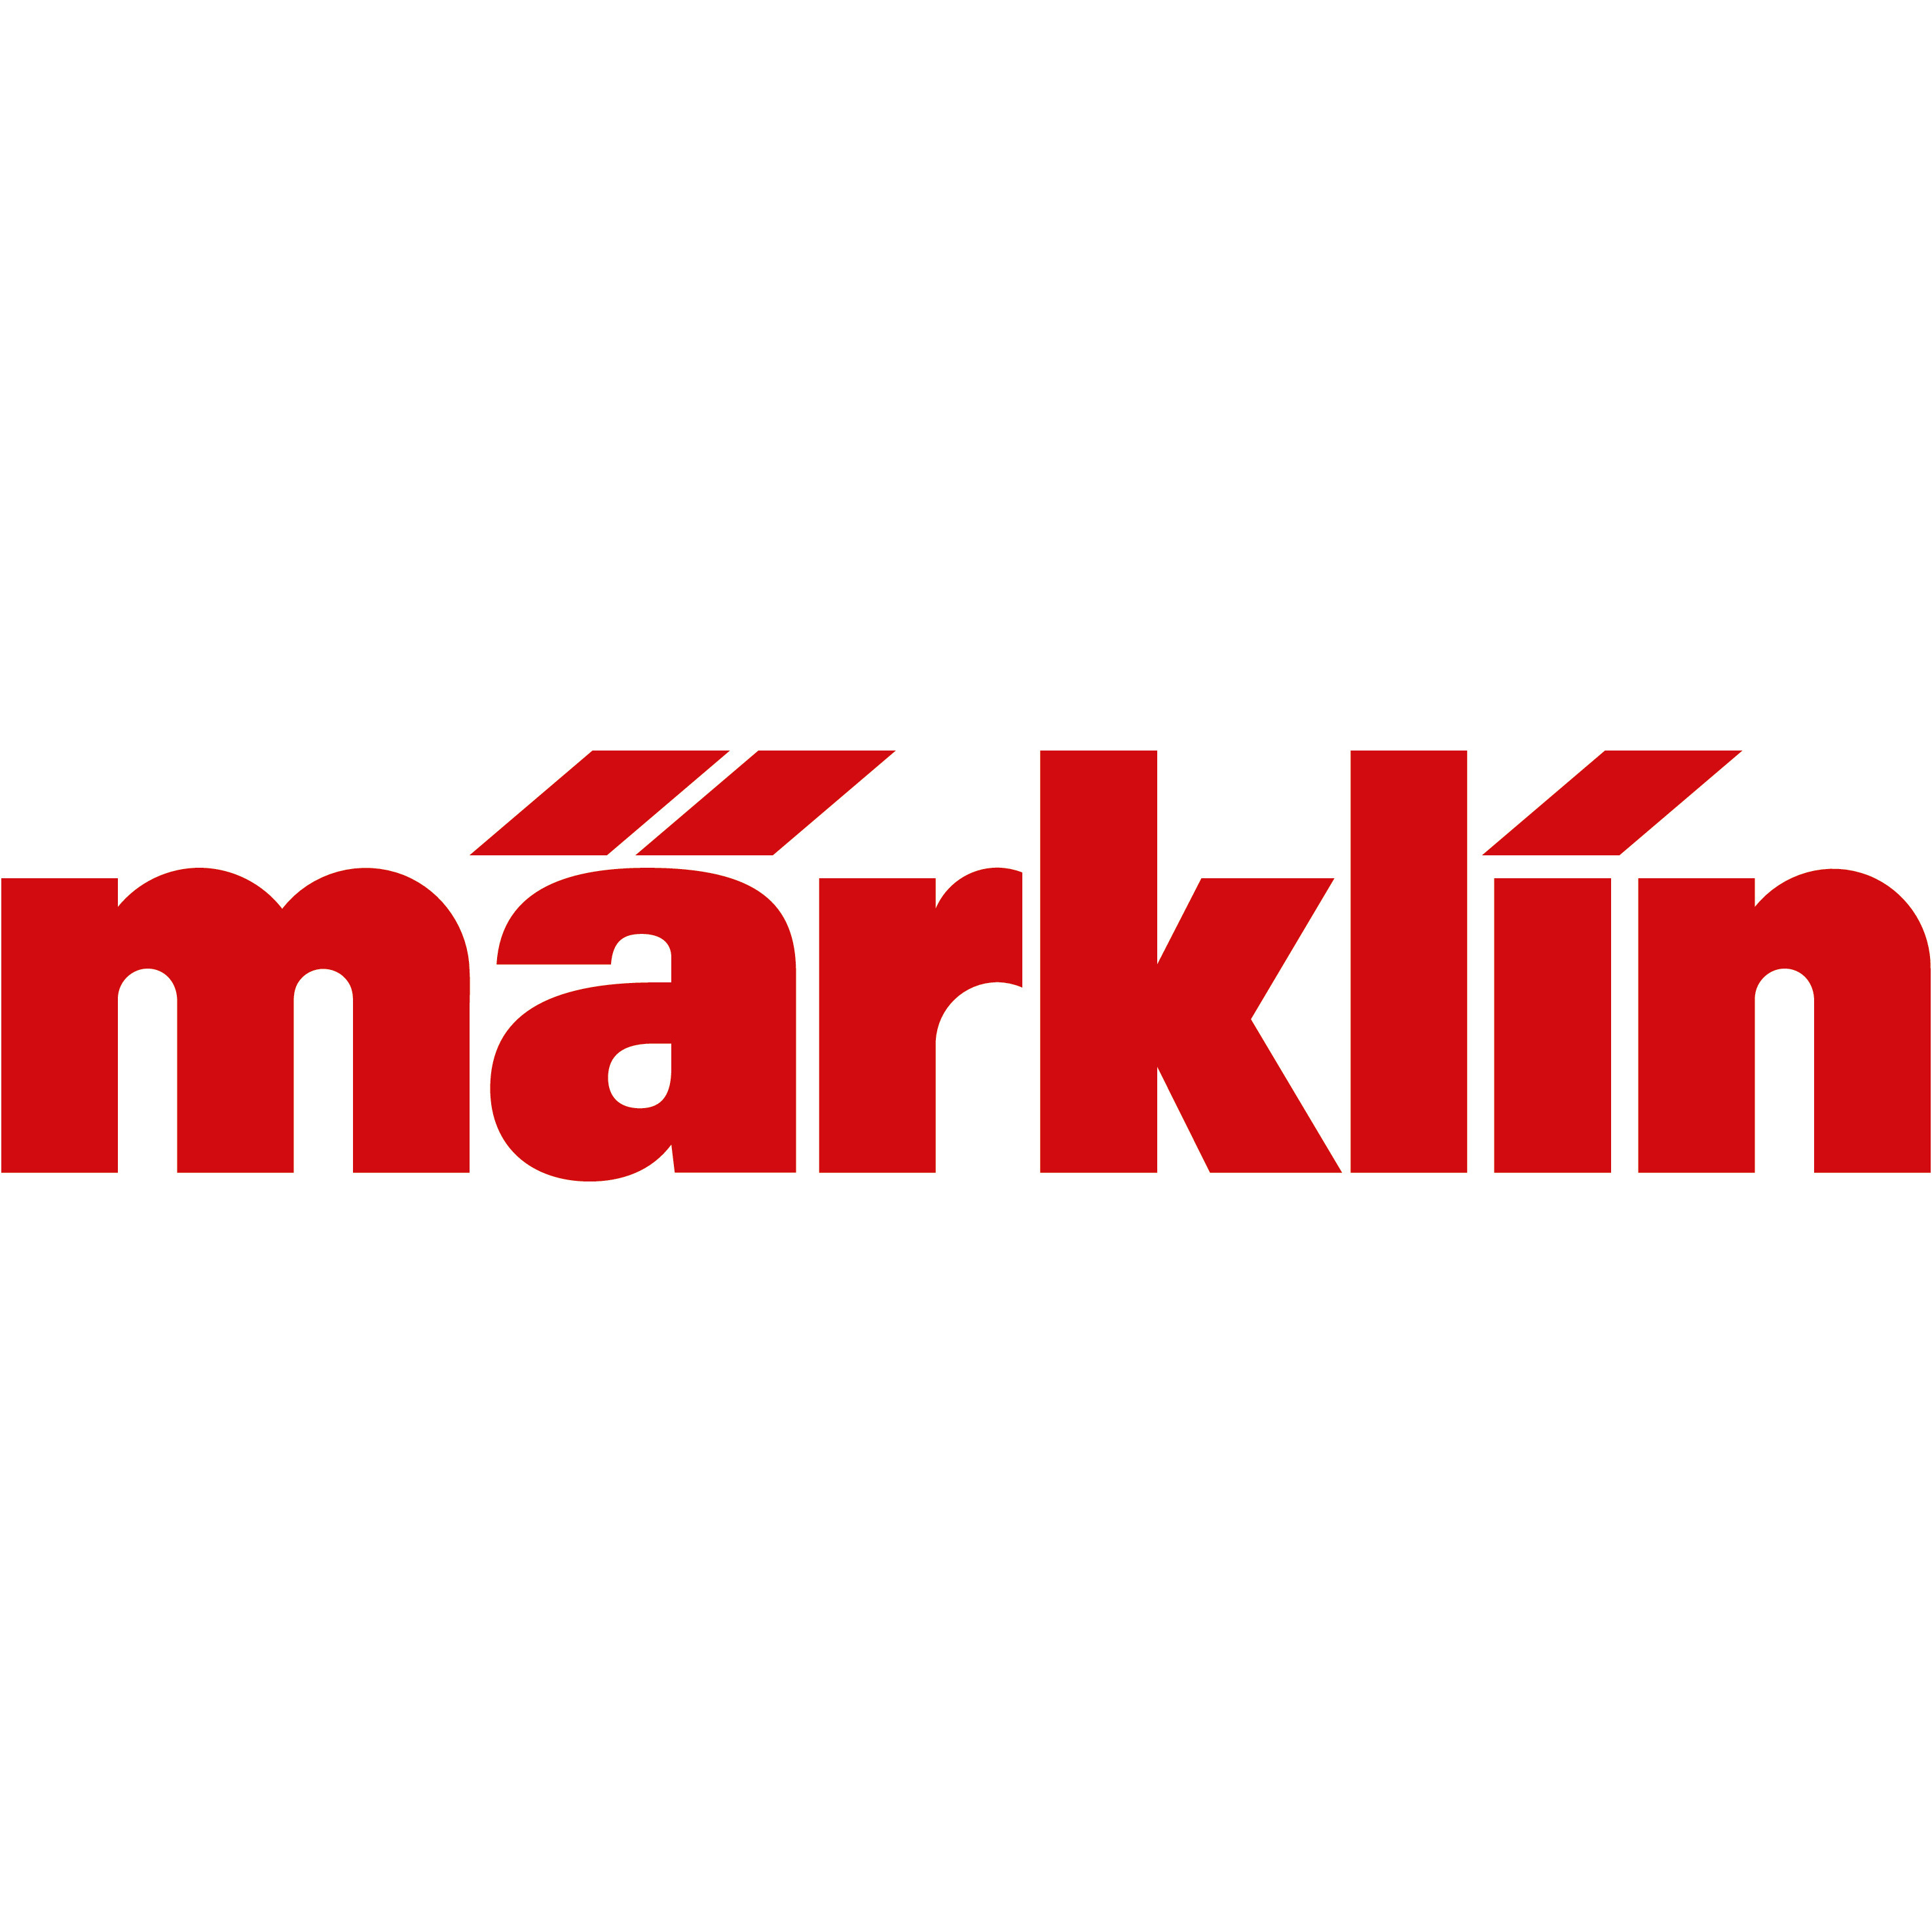 Gebr. Märklin & Cie. GmbH